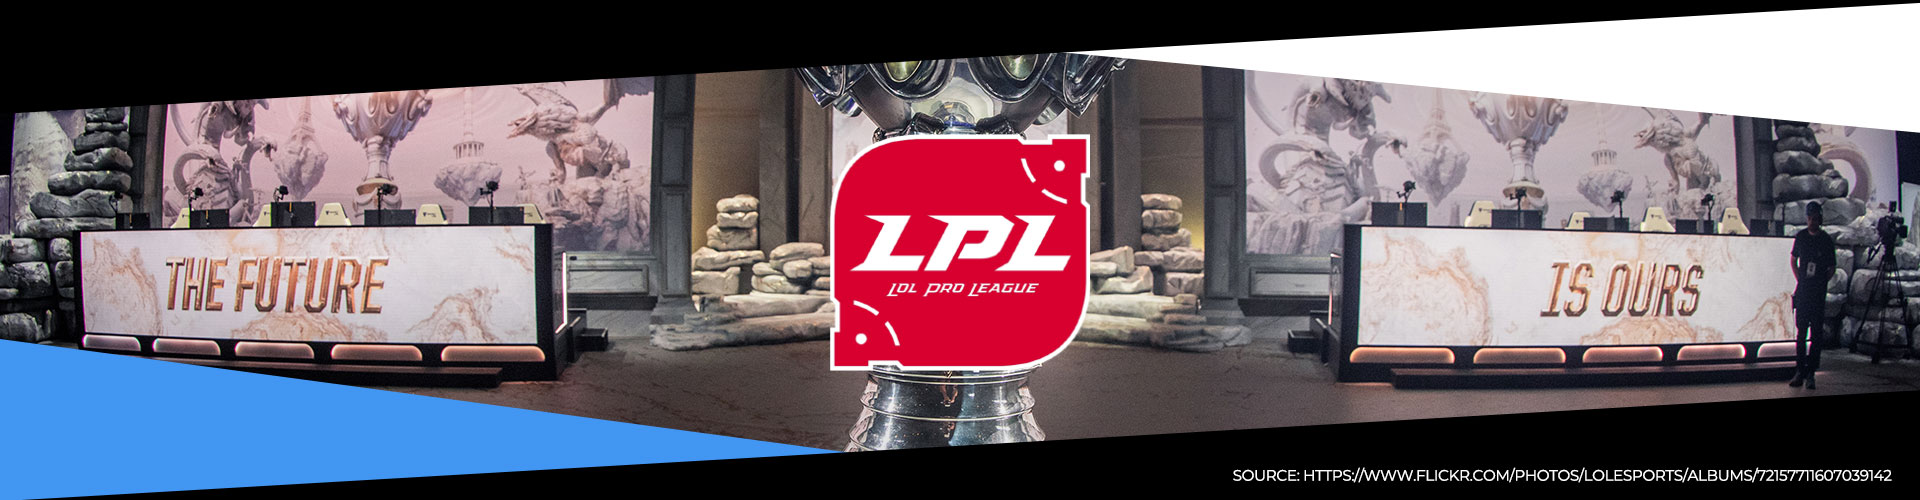 Kiinan LPL-liigan kevätkausi 2020